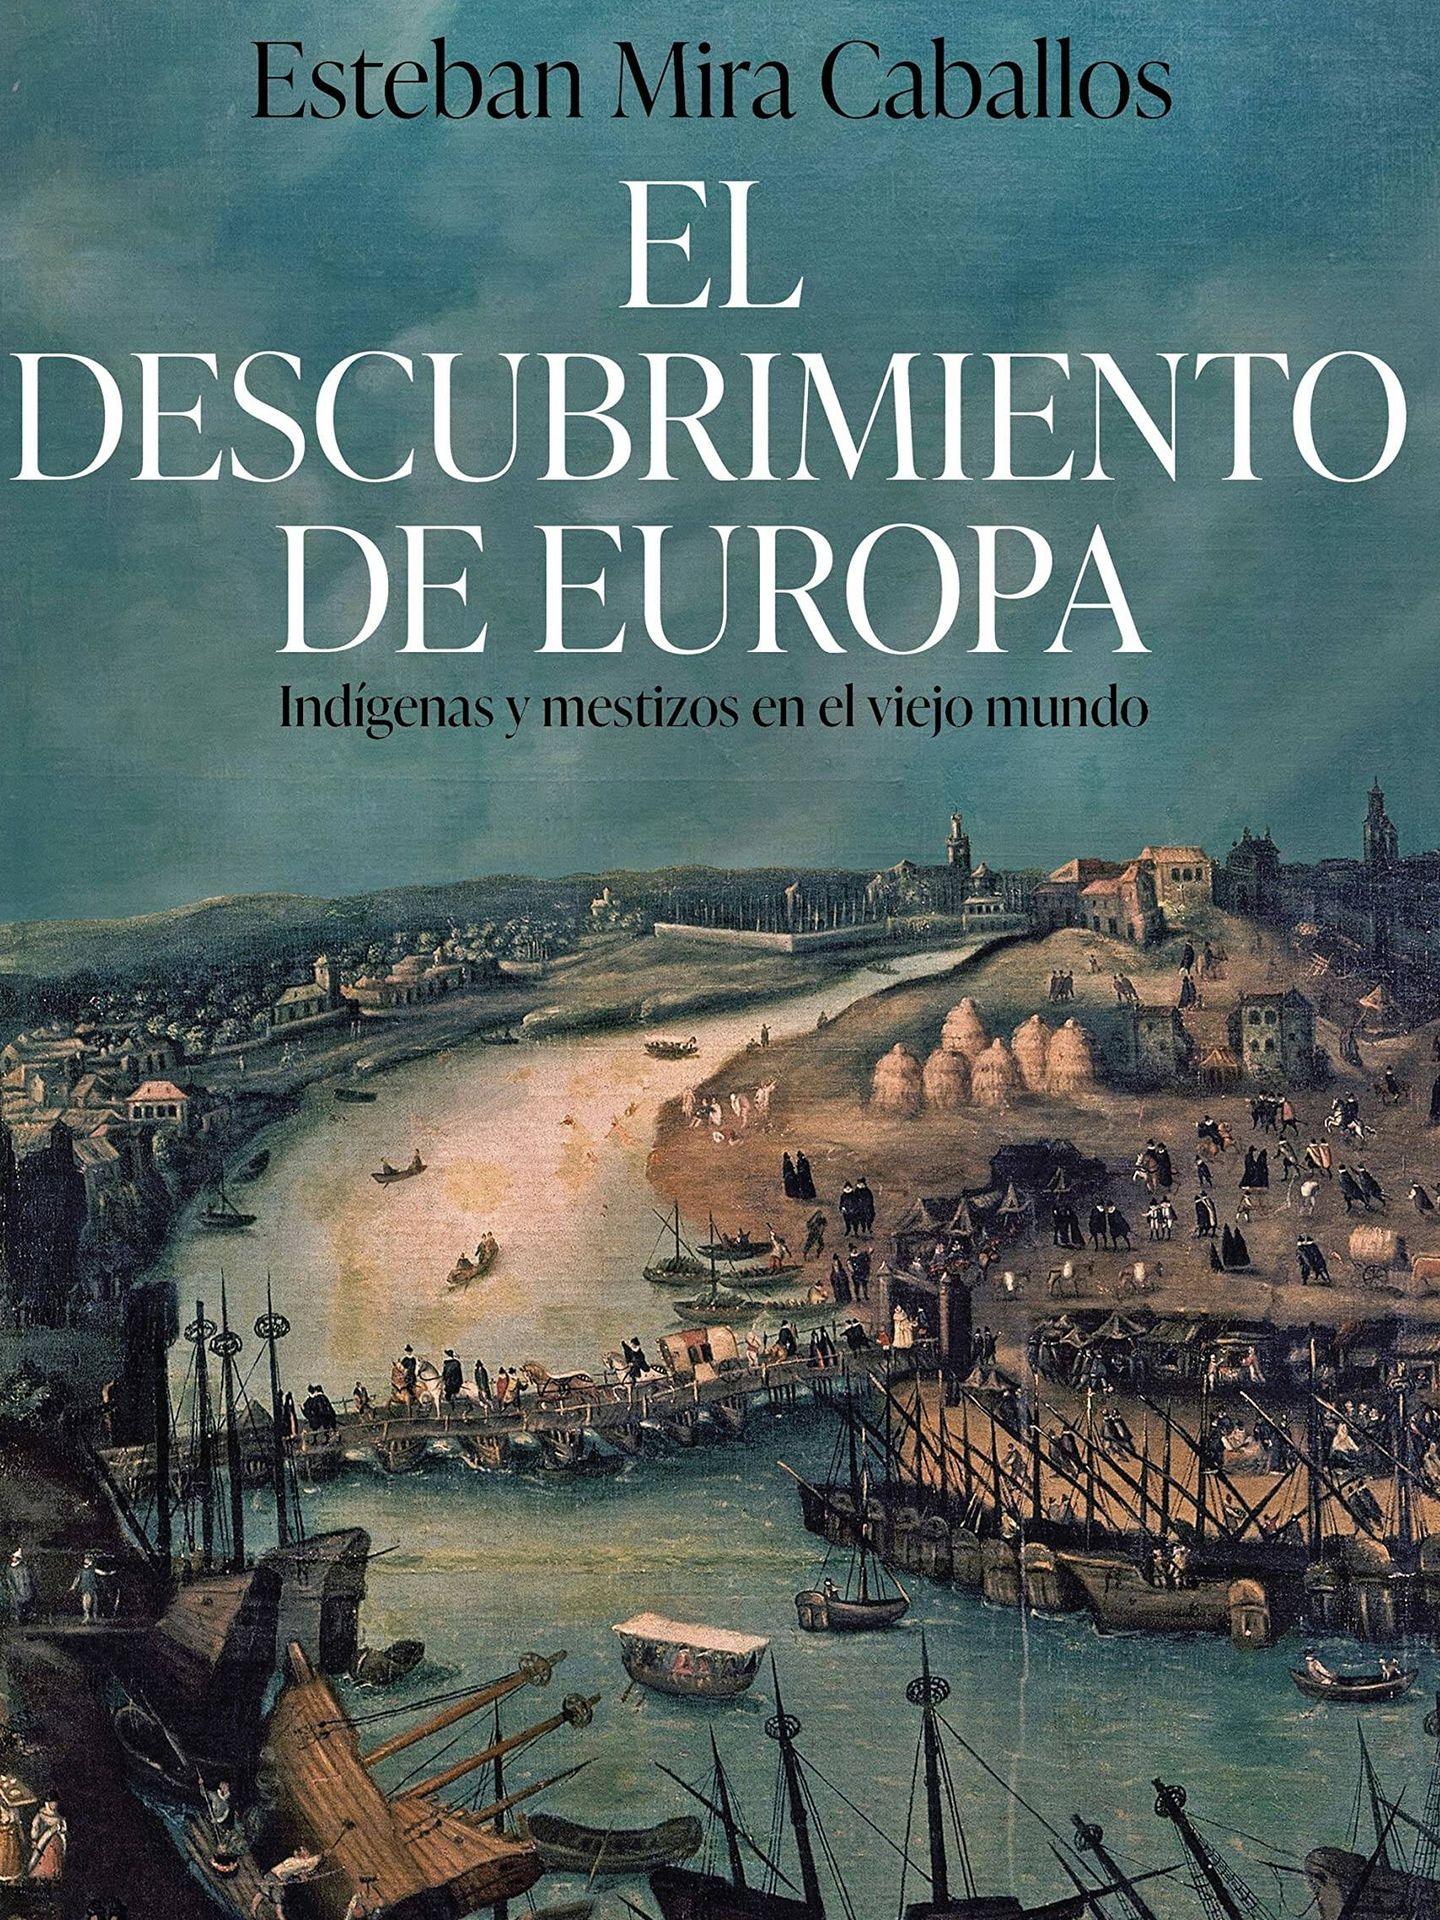 Portada de 'El descubrimiento de Europa: Indígenas y mestizos en el viejo mundo', del historiador Esteban Mira Caballos.